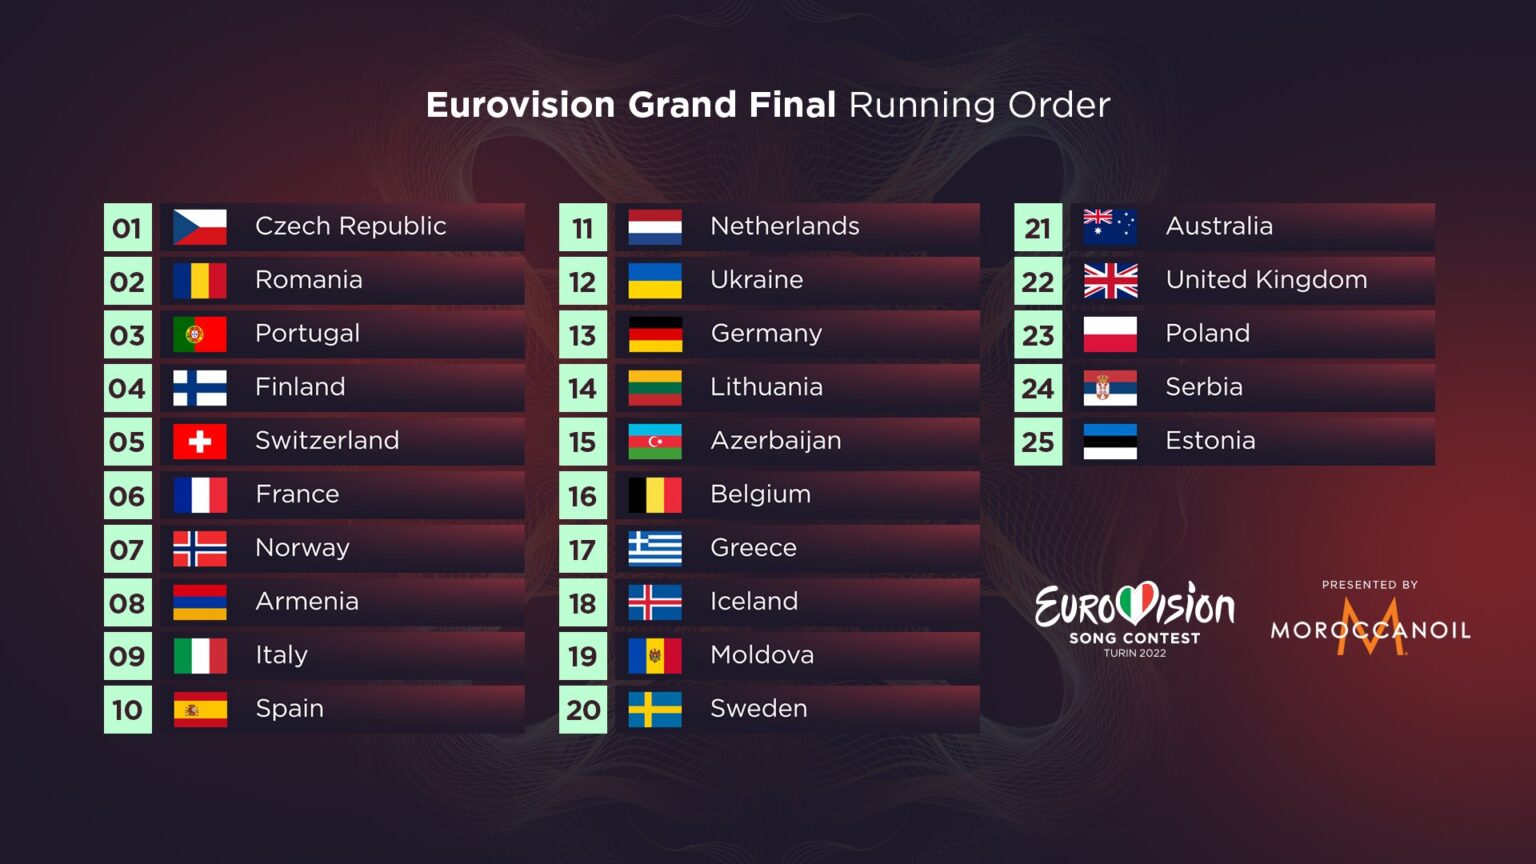 ordre de passage eurovision 2022